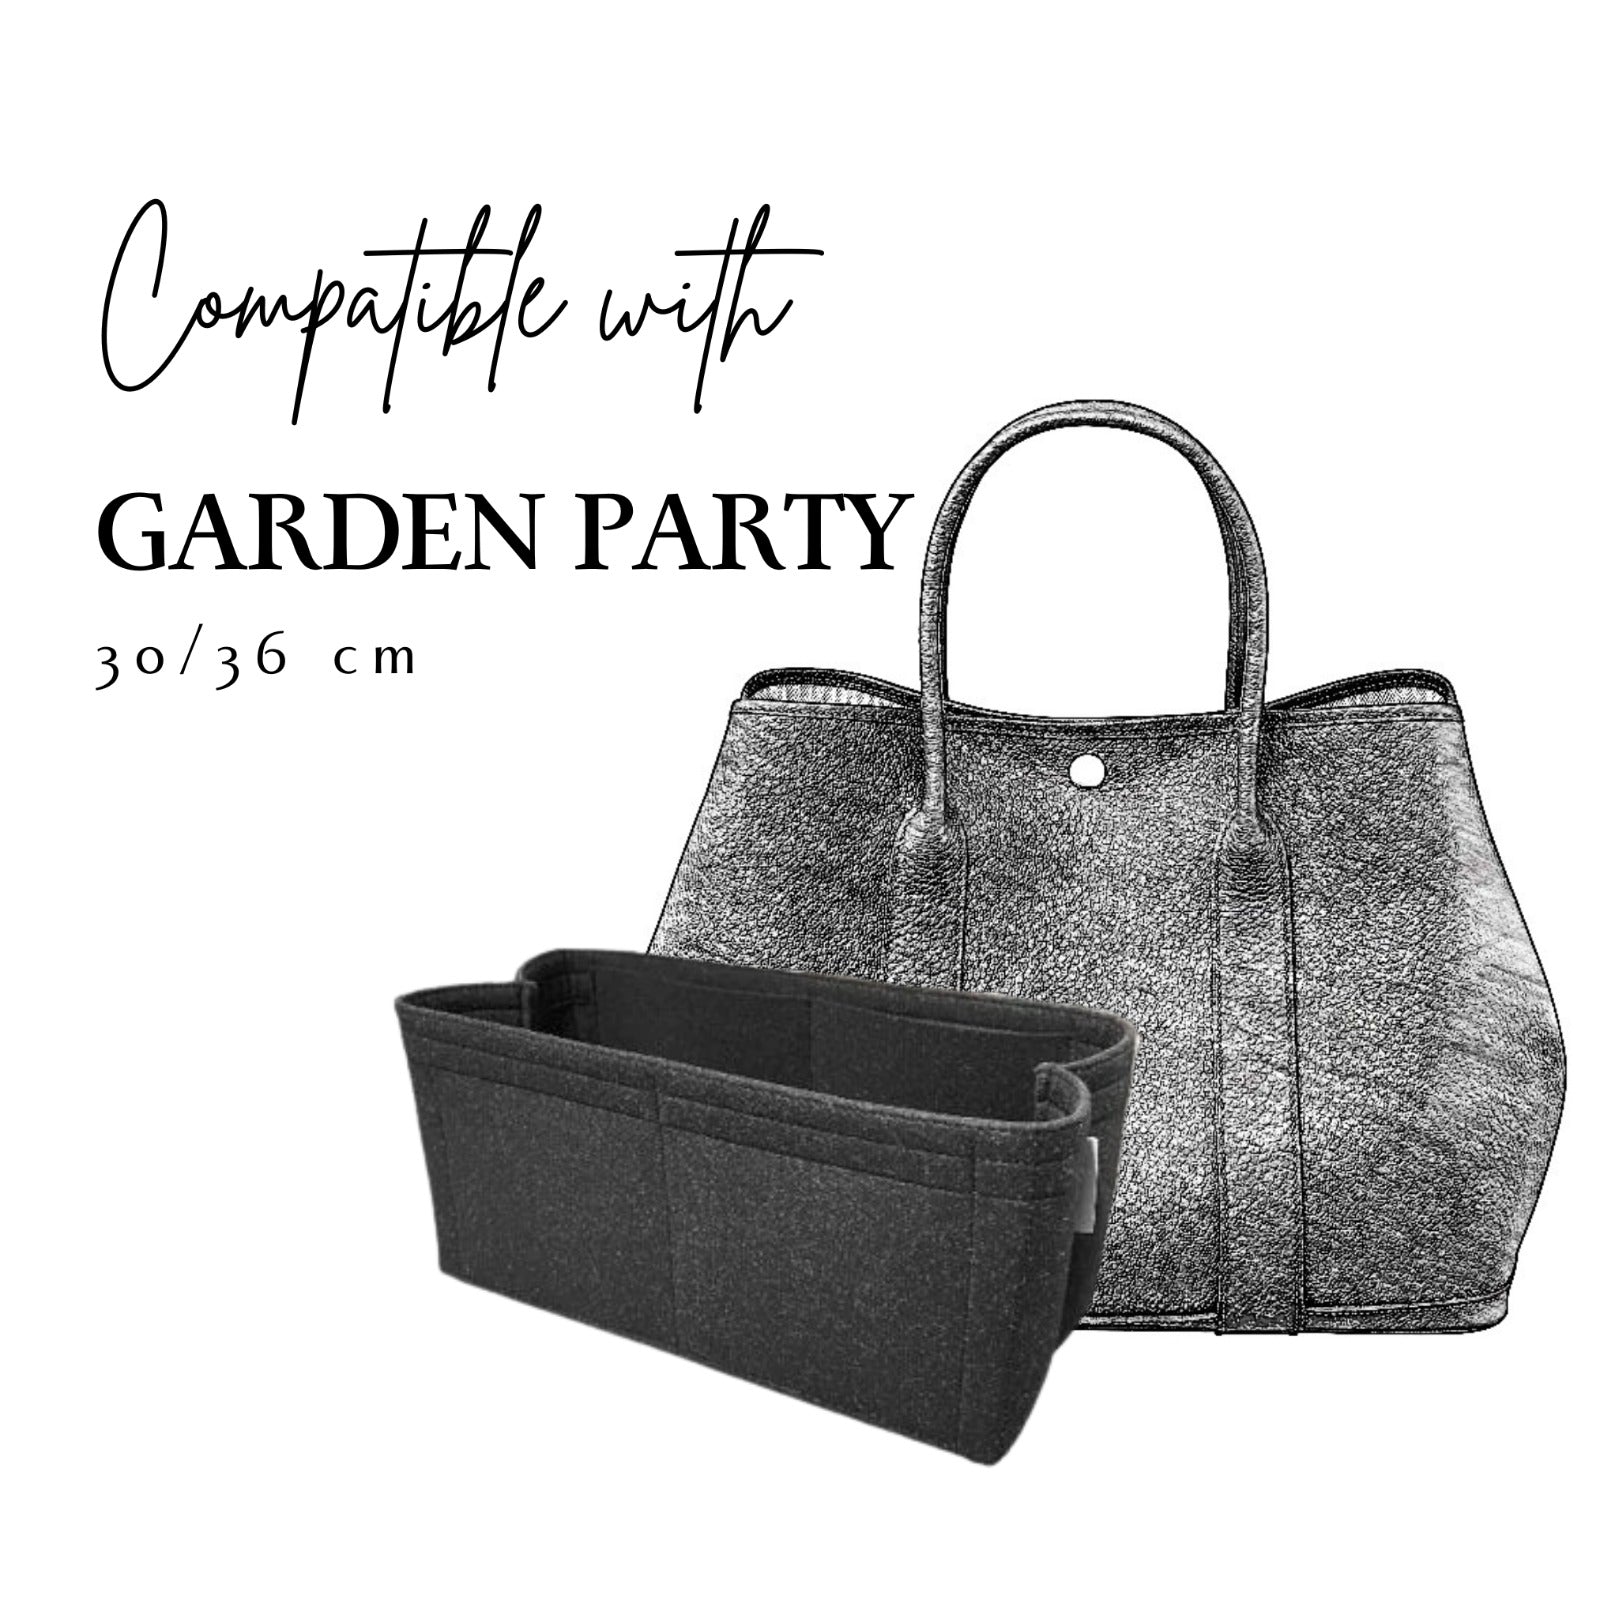 Inner Bag Organizer - Hermes Garden Party